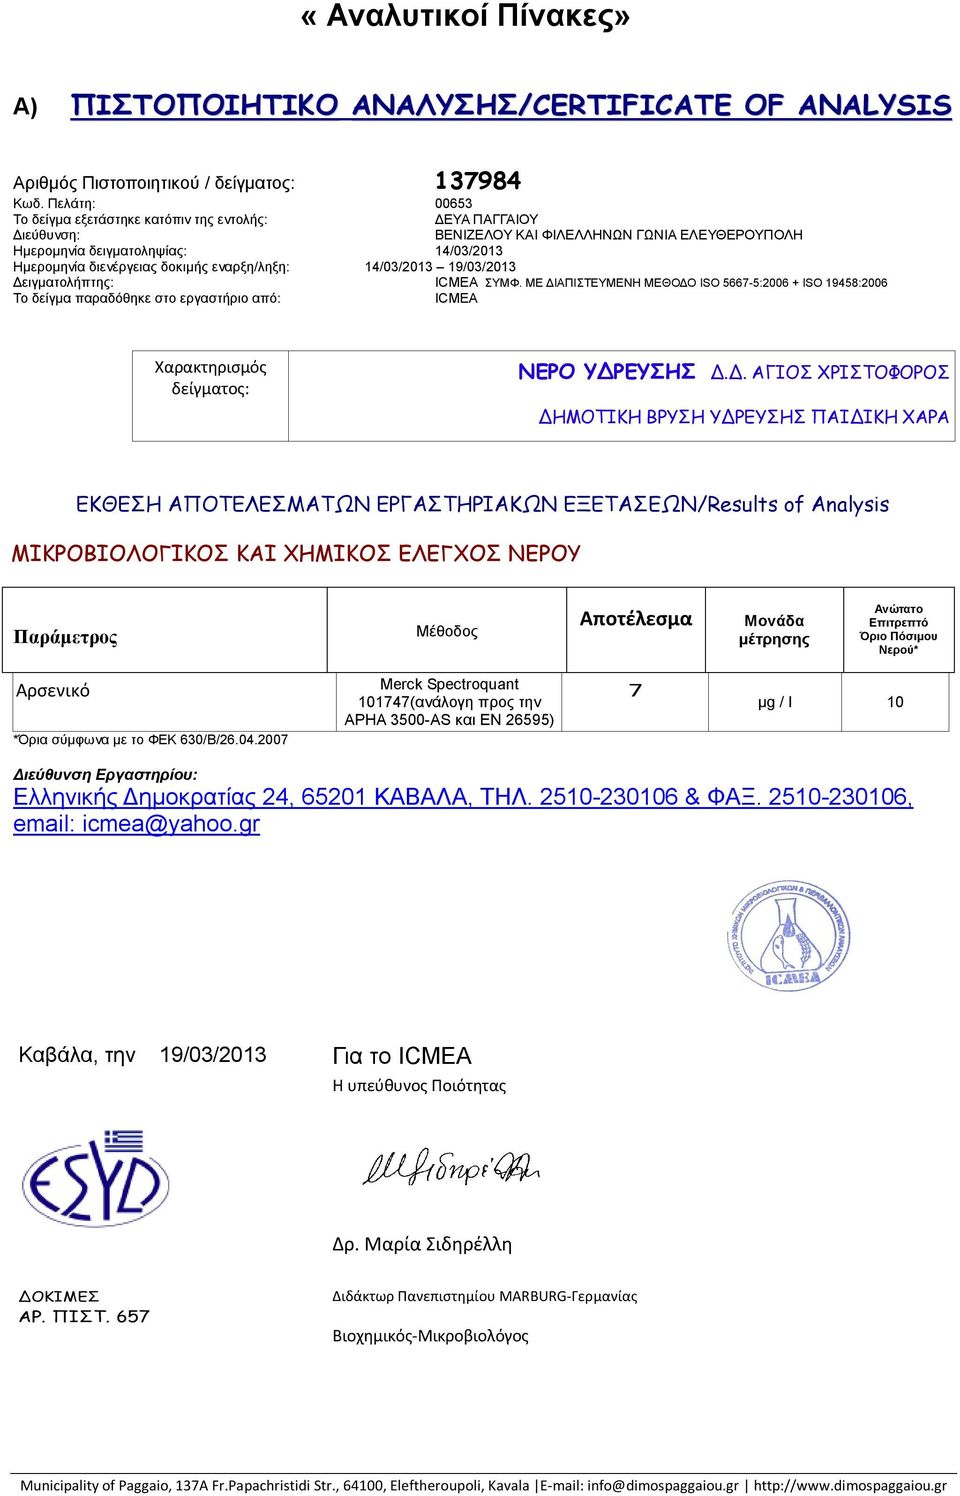 δειγματοληψίας: 14/03/2013 Ημερομηνία διενέργειας δοκιμής εναρξη/ληξη: 14/03/2013 19/03/2013 Δειγματολήπτης: ICMEA ΣΥΜΦ.